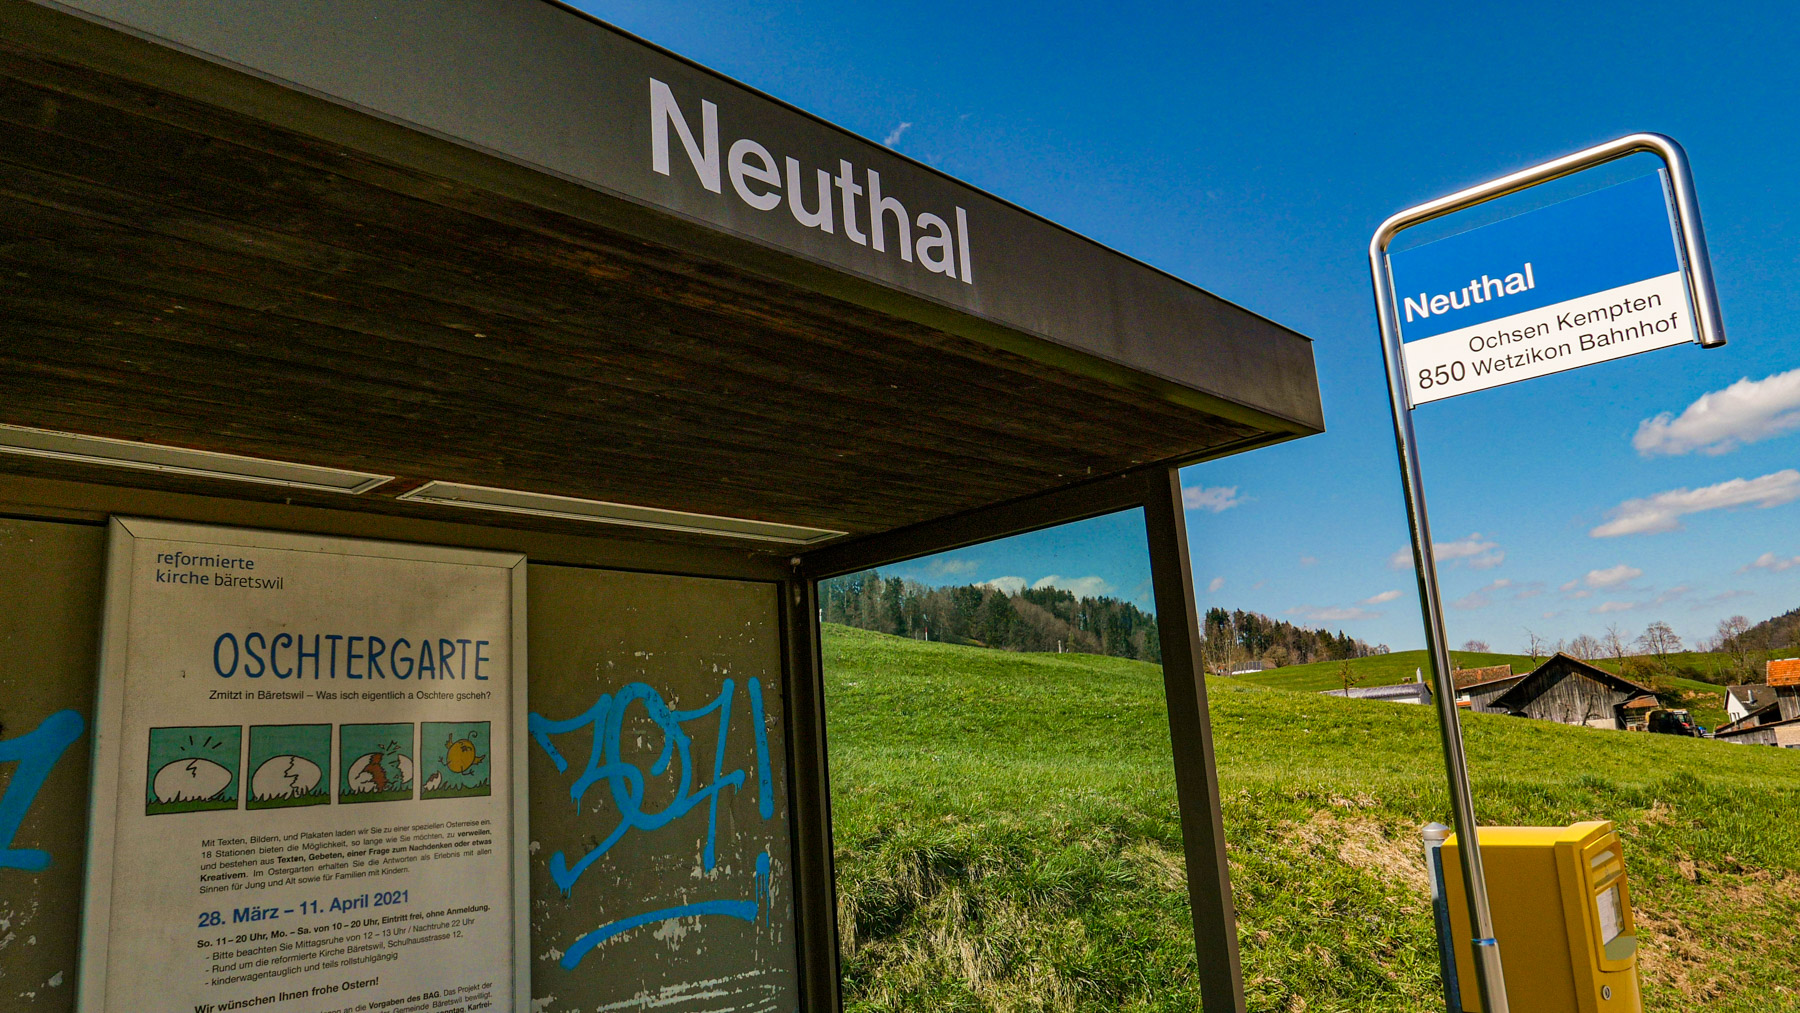 23 Neuthal ÖV-Station